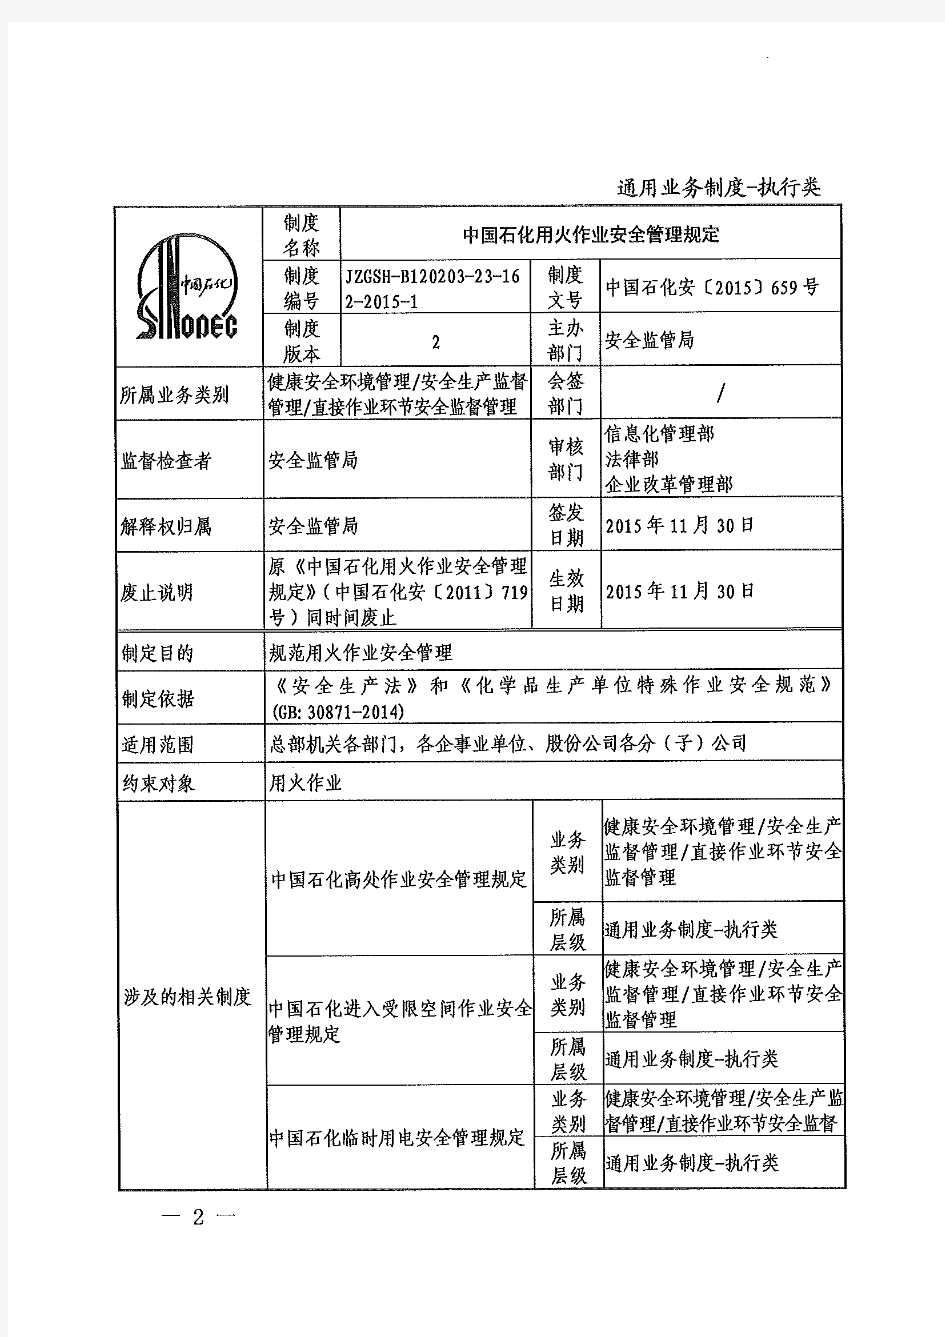 中国石化用火作业安全管理规定(中国石化安【2015】659号)